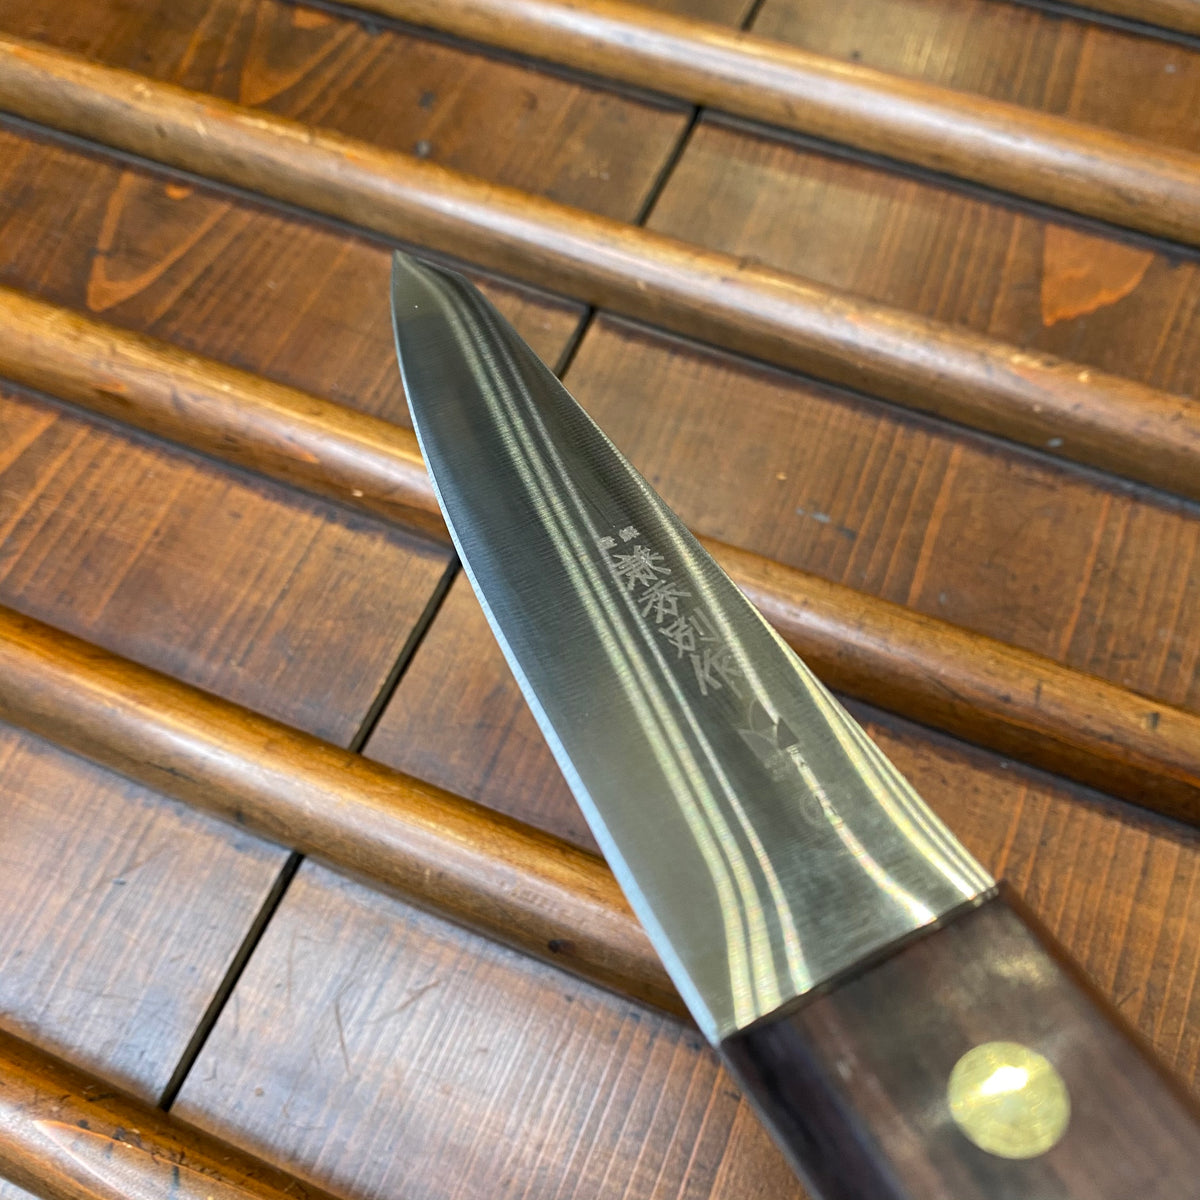 Hankotsu Japanese-Style Boning Knife - Classic